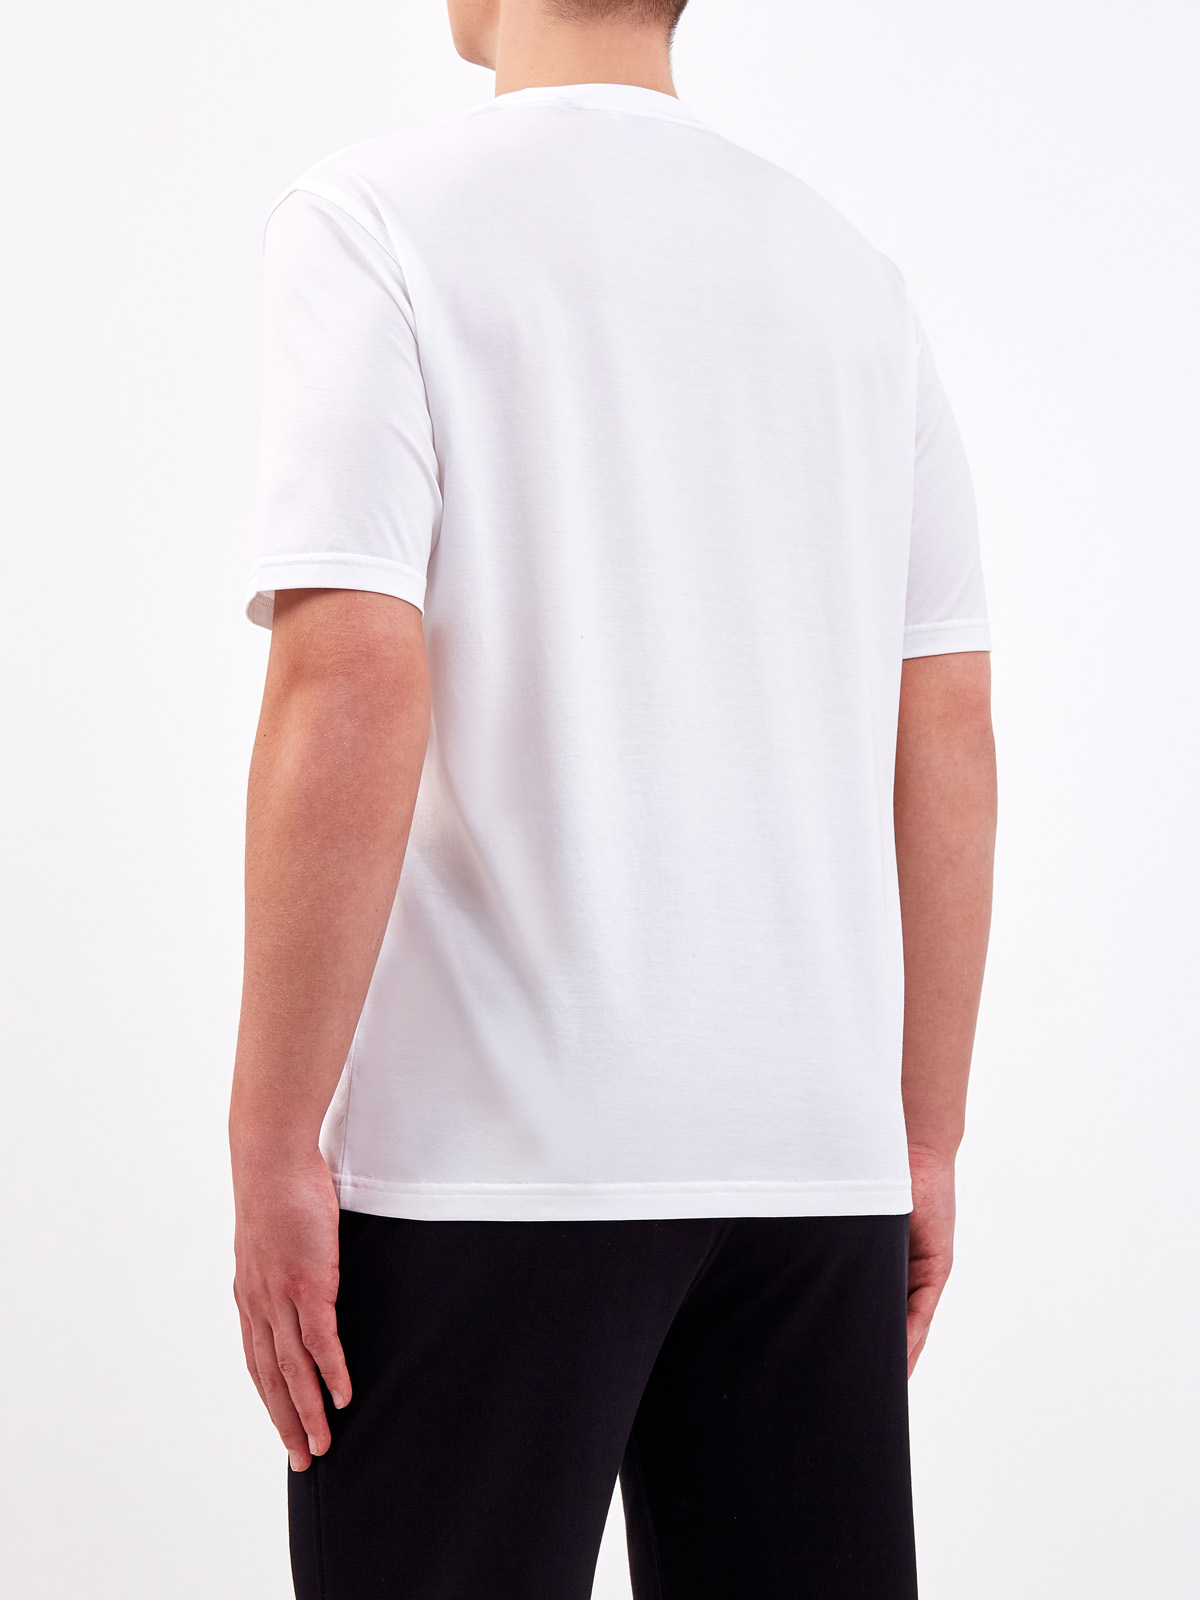 Хлопковая футболка из джерси с аппликацией BURBERRY, цвет белый, размер S - фото 4